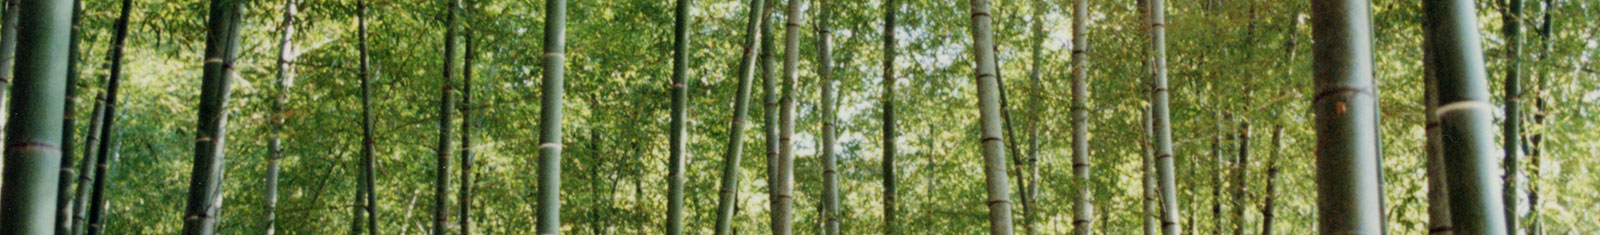 「竹について」イメージ